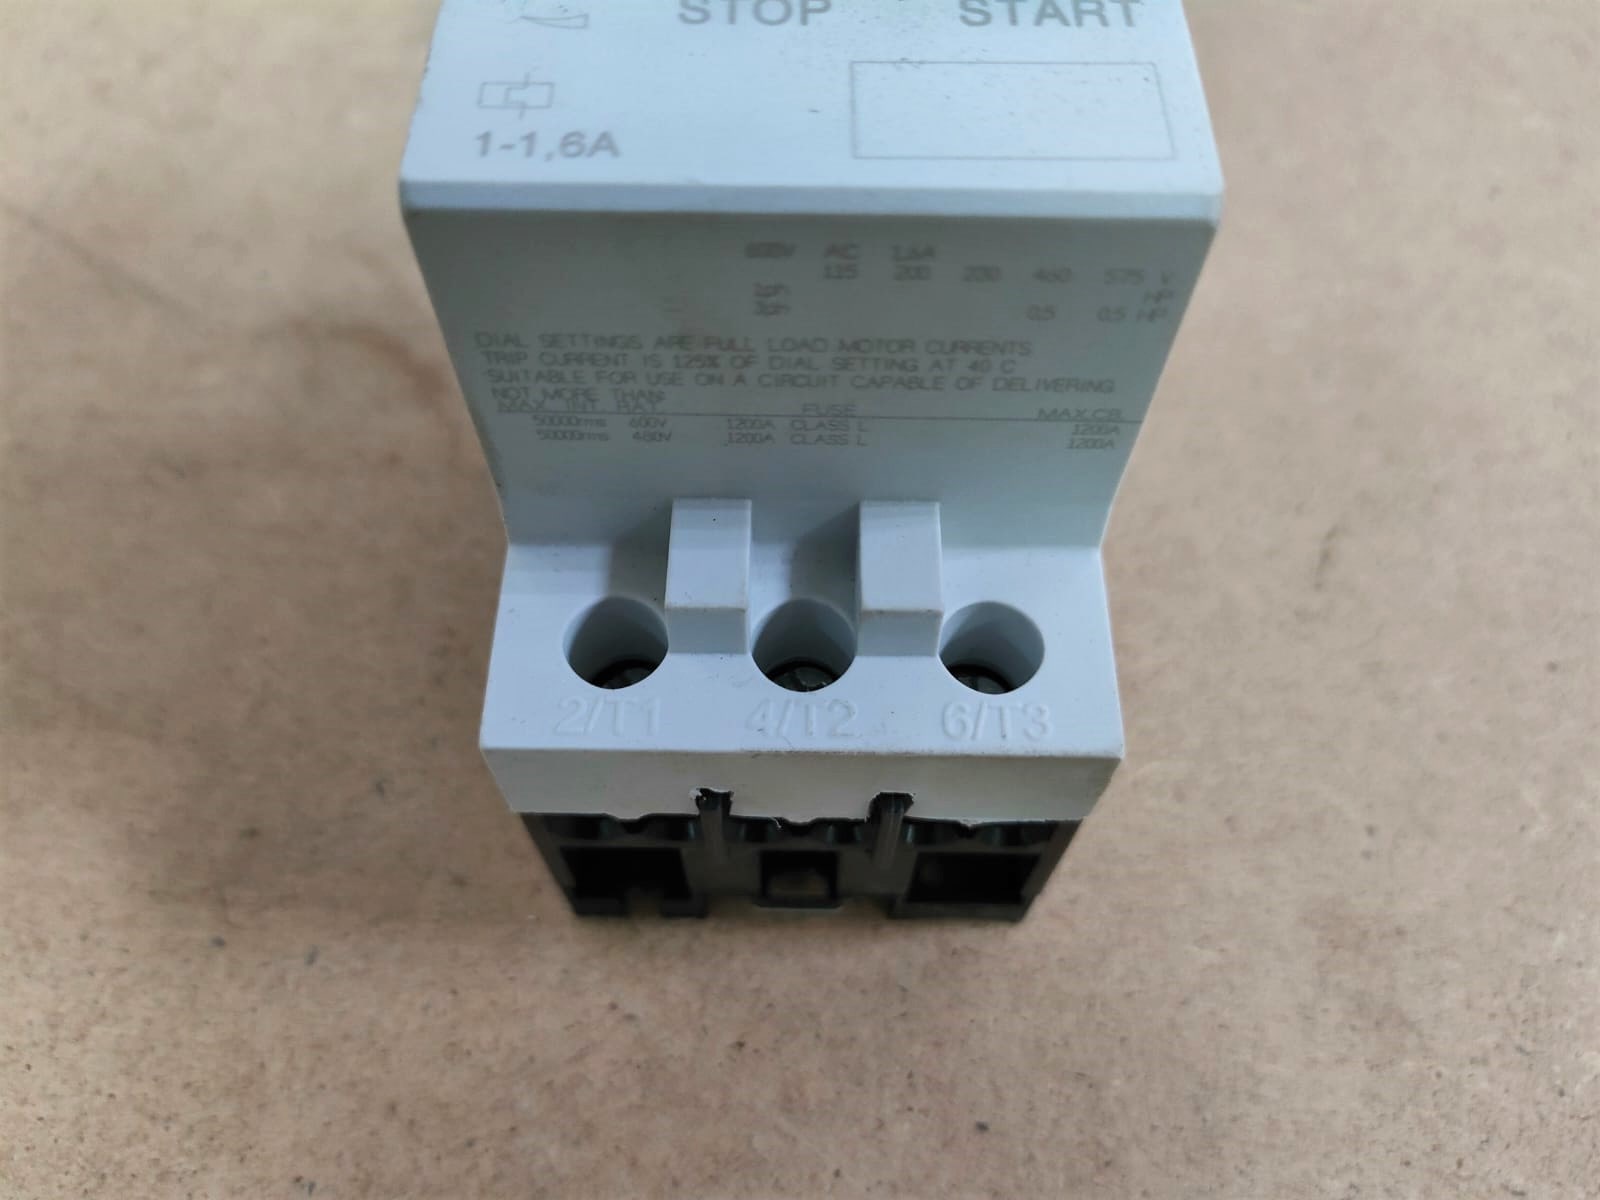 Термический выключатель М250 1-1,6А ВЛГ